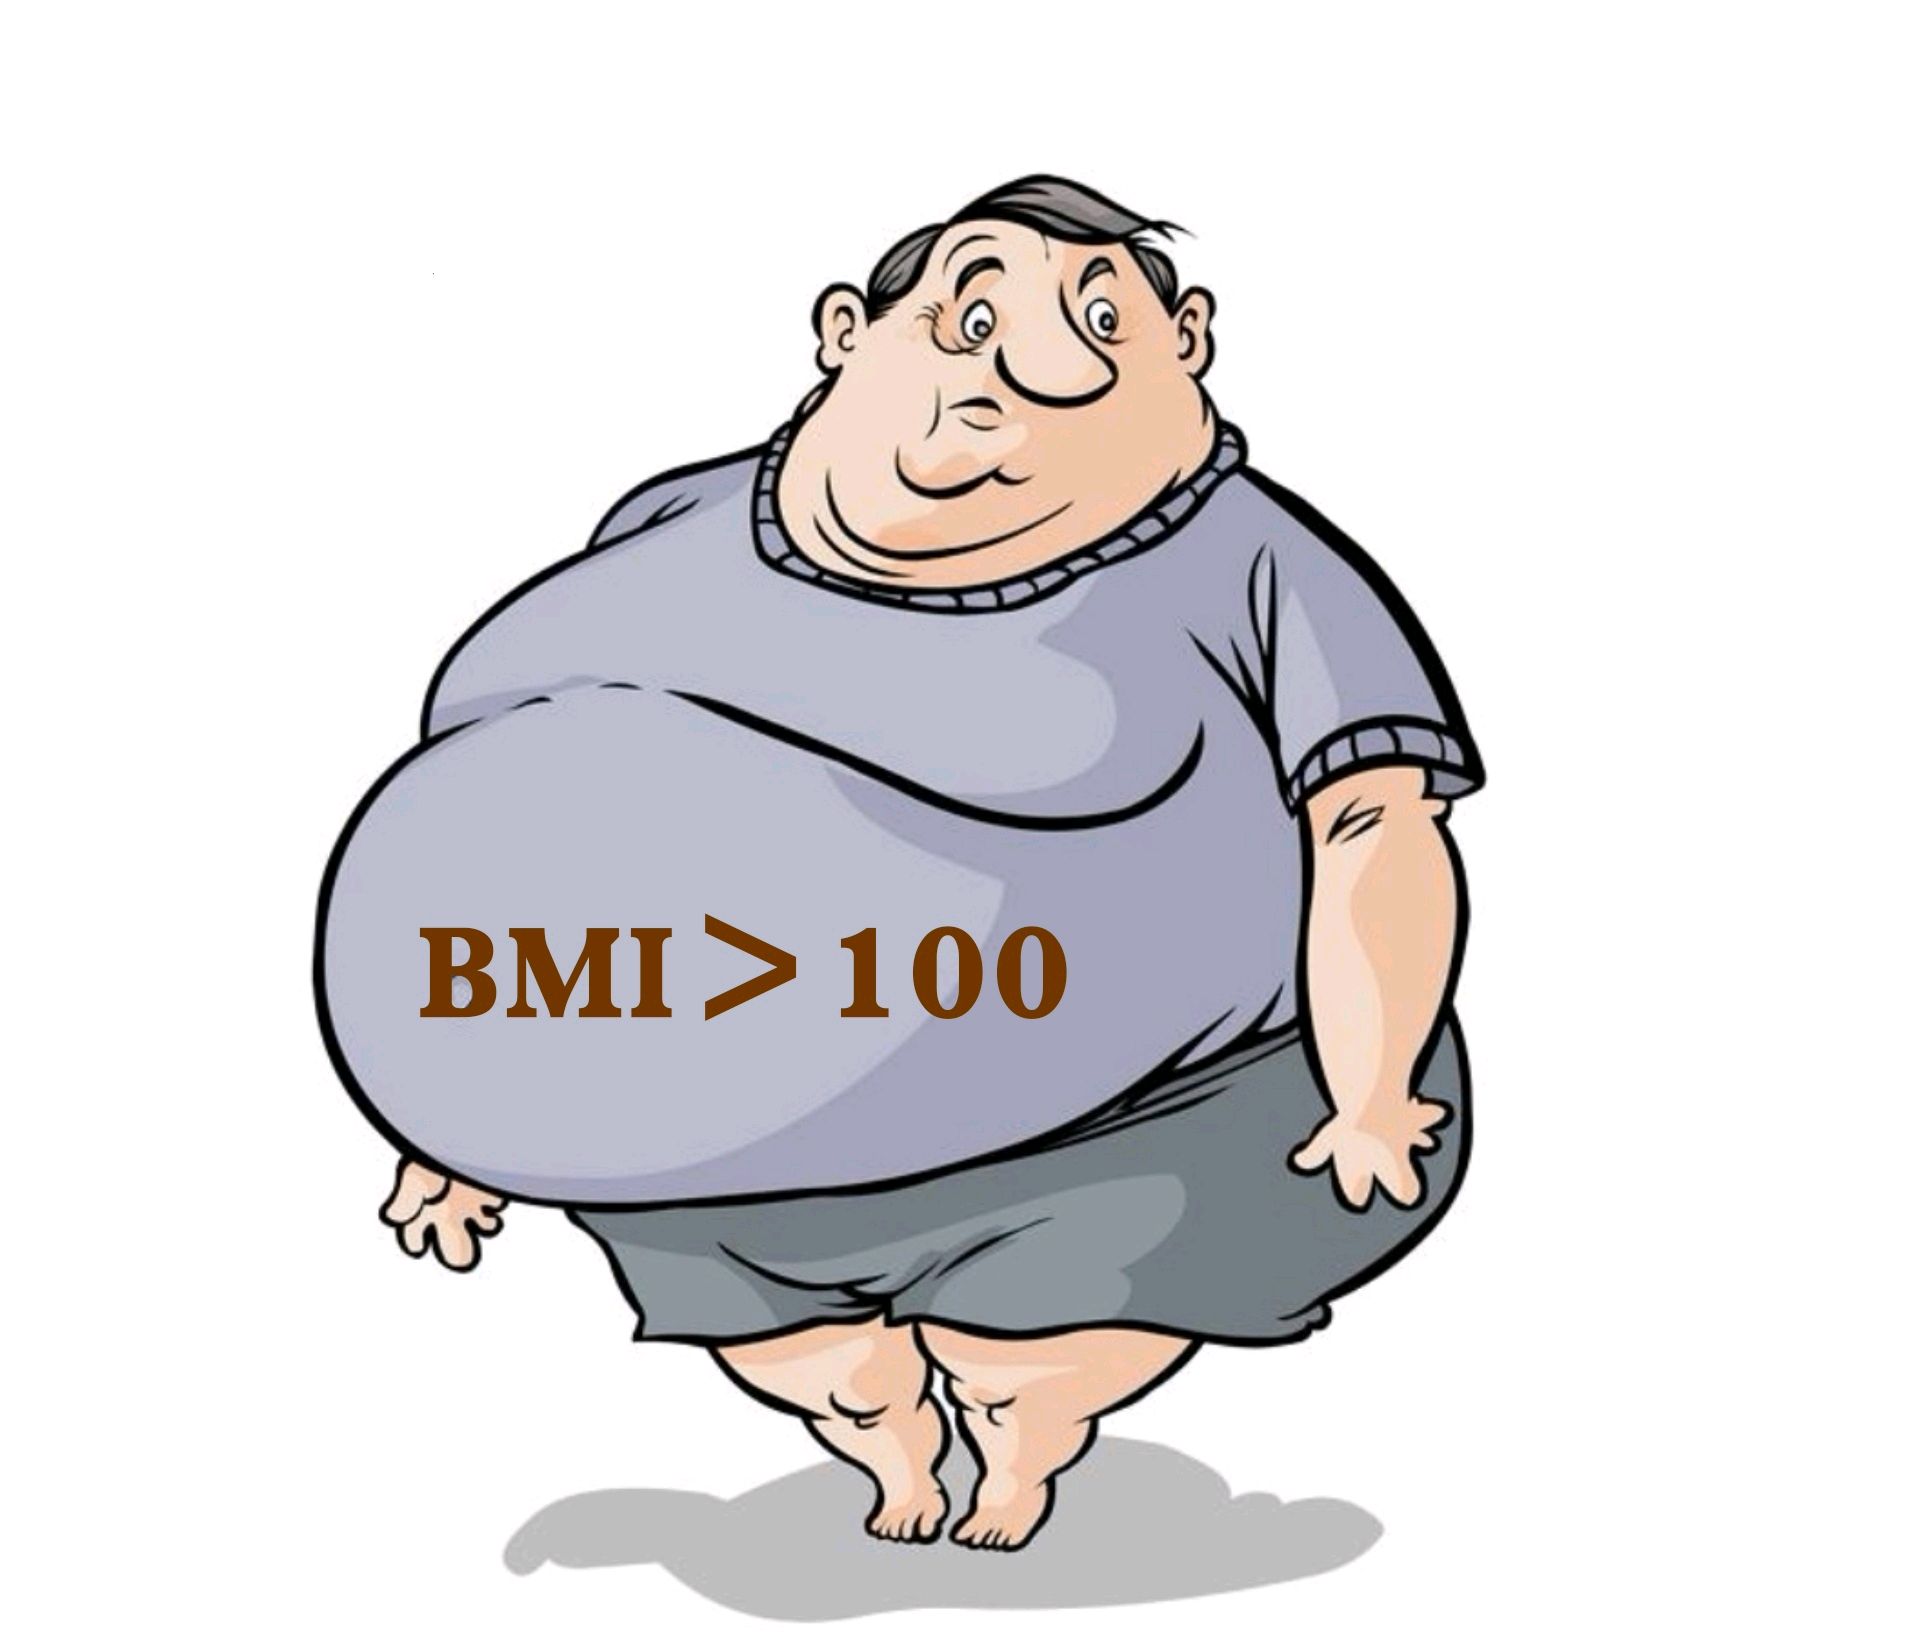 肥胖超重者增加关节的负荷,改变行走姿势,步态和运动习惯